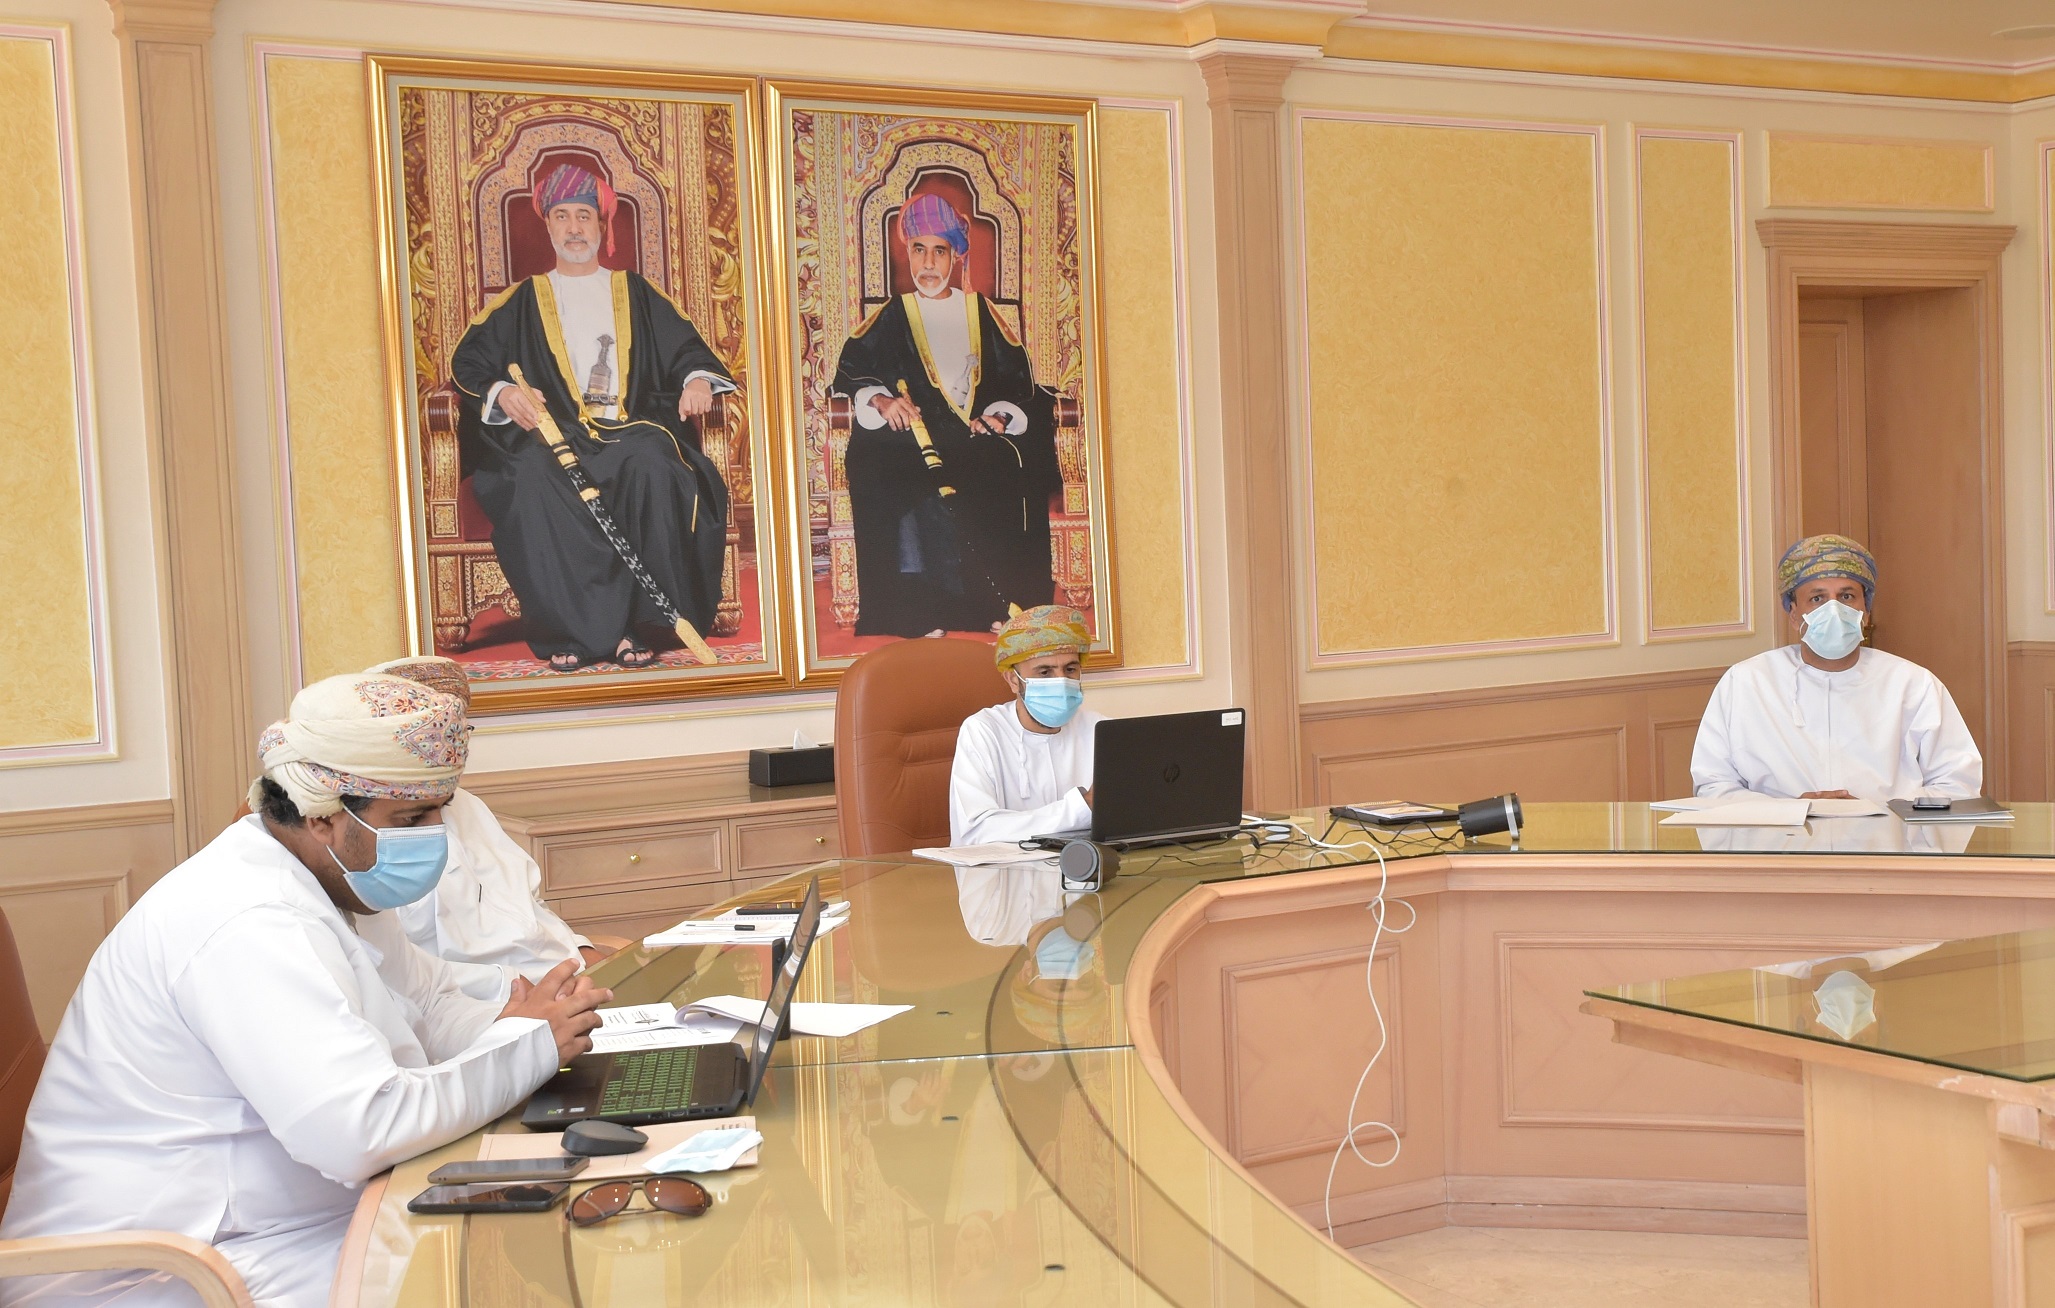 الاجتماع التاسع لوكلاء وزارات الصحة الخليجيين لمناقشة مستجدات كورونا